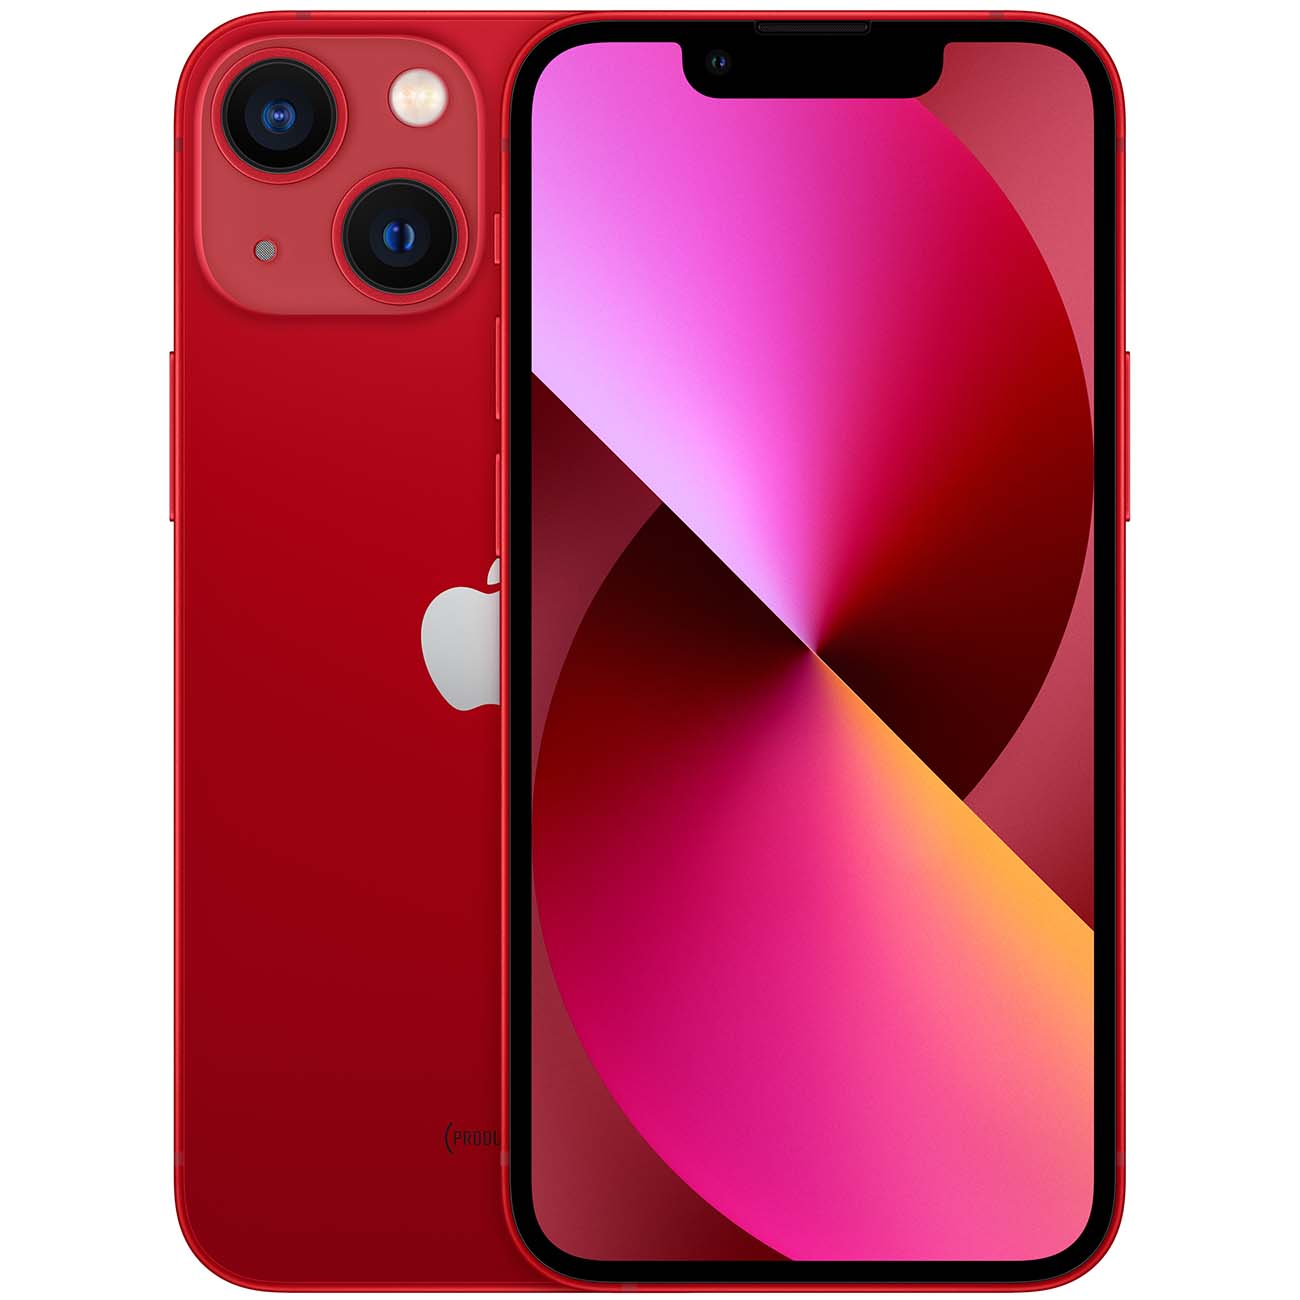 Купить смартфон apple iphone 13 mini 512gb (product) red Apple iPhone 13 mini в официальном магазине Apple, Samsung, Xiaomi. iPixel.ru Купить, заказ, кредит, рассрочка, отзывы,  характеристики, цена,  фотографии, в подарок.